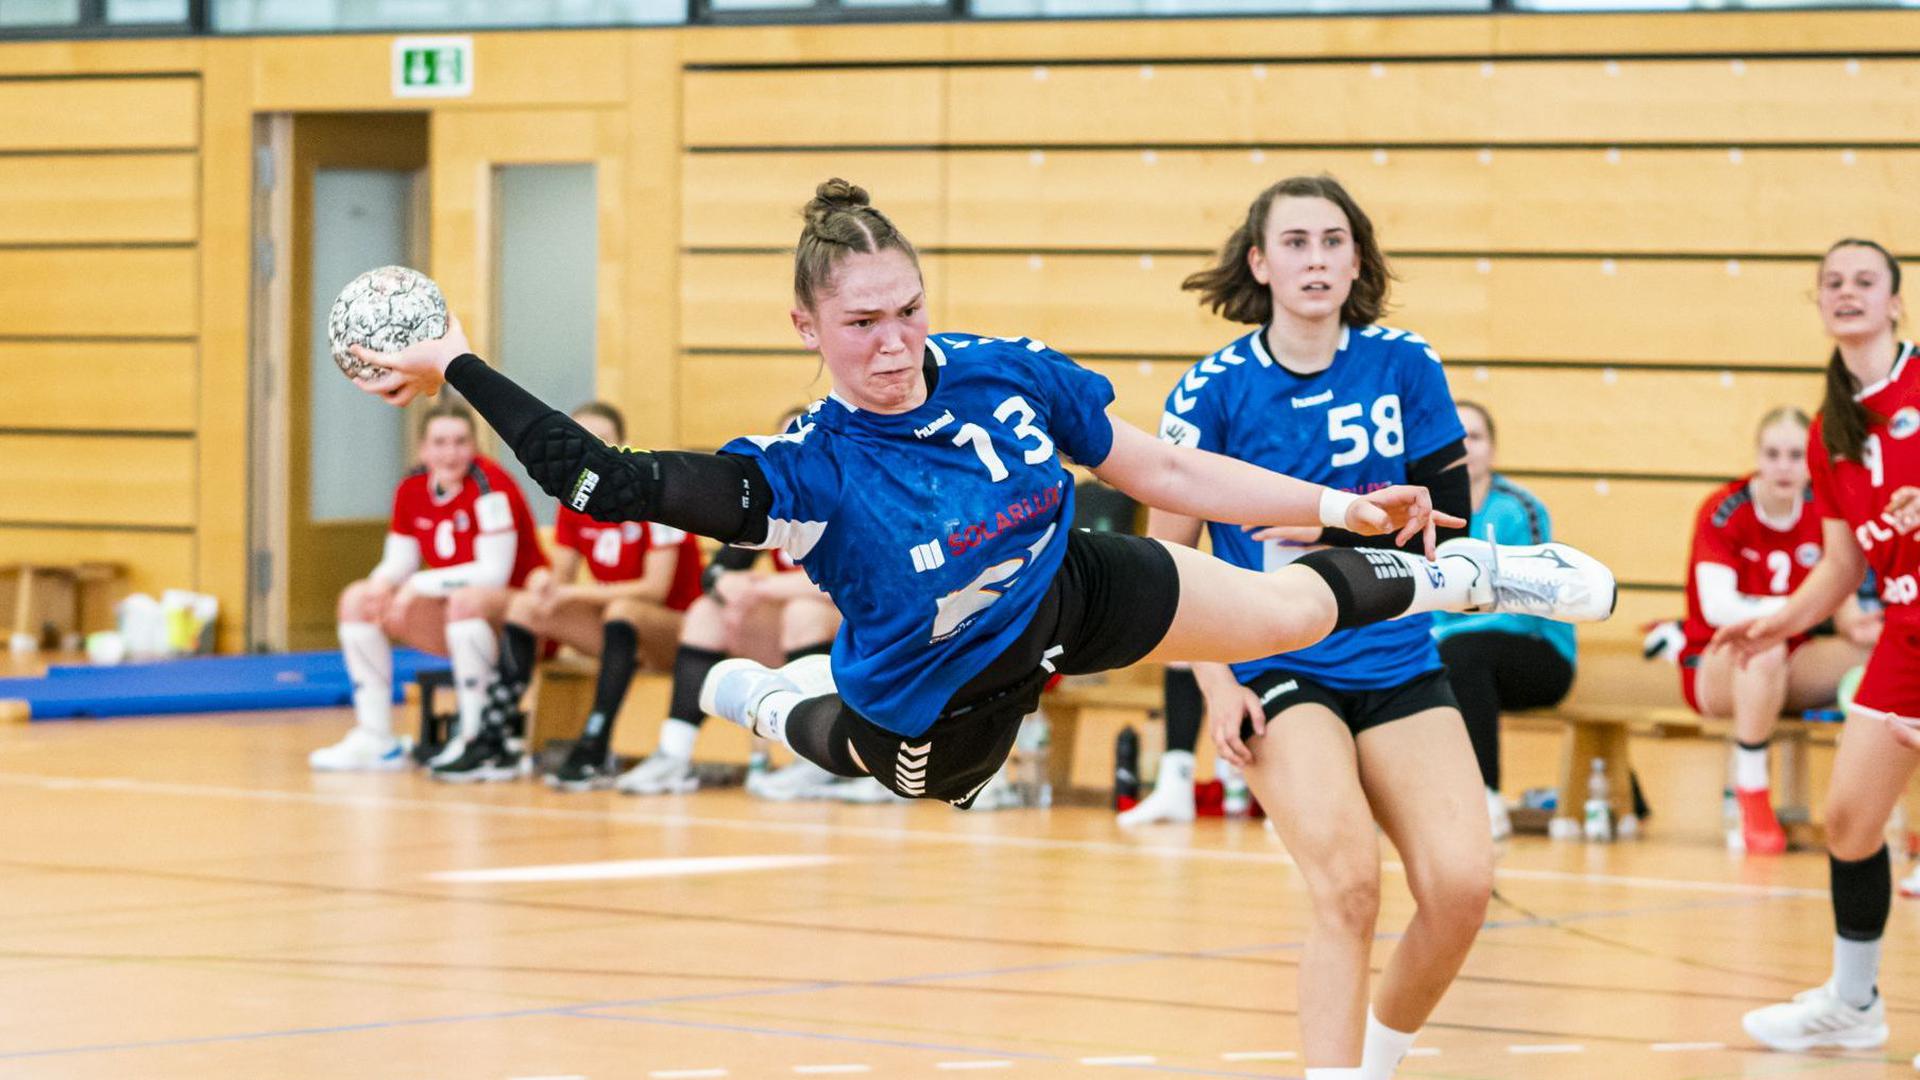 Endstation Viertelfinale: Ariane Pfundstein (links) und Franka Riedl verpassten mit den Handball-A-Mädchen der SG Steinbach/Kappelwindeck den Einzug ins Final-Four-Turnier.